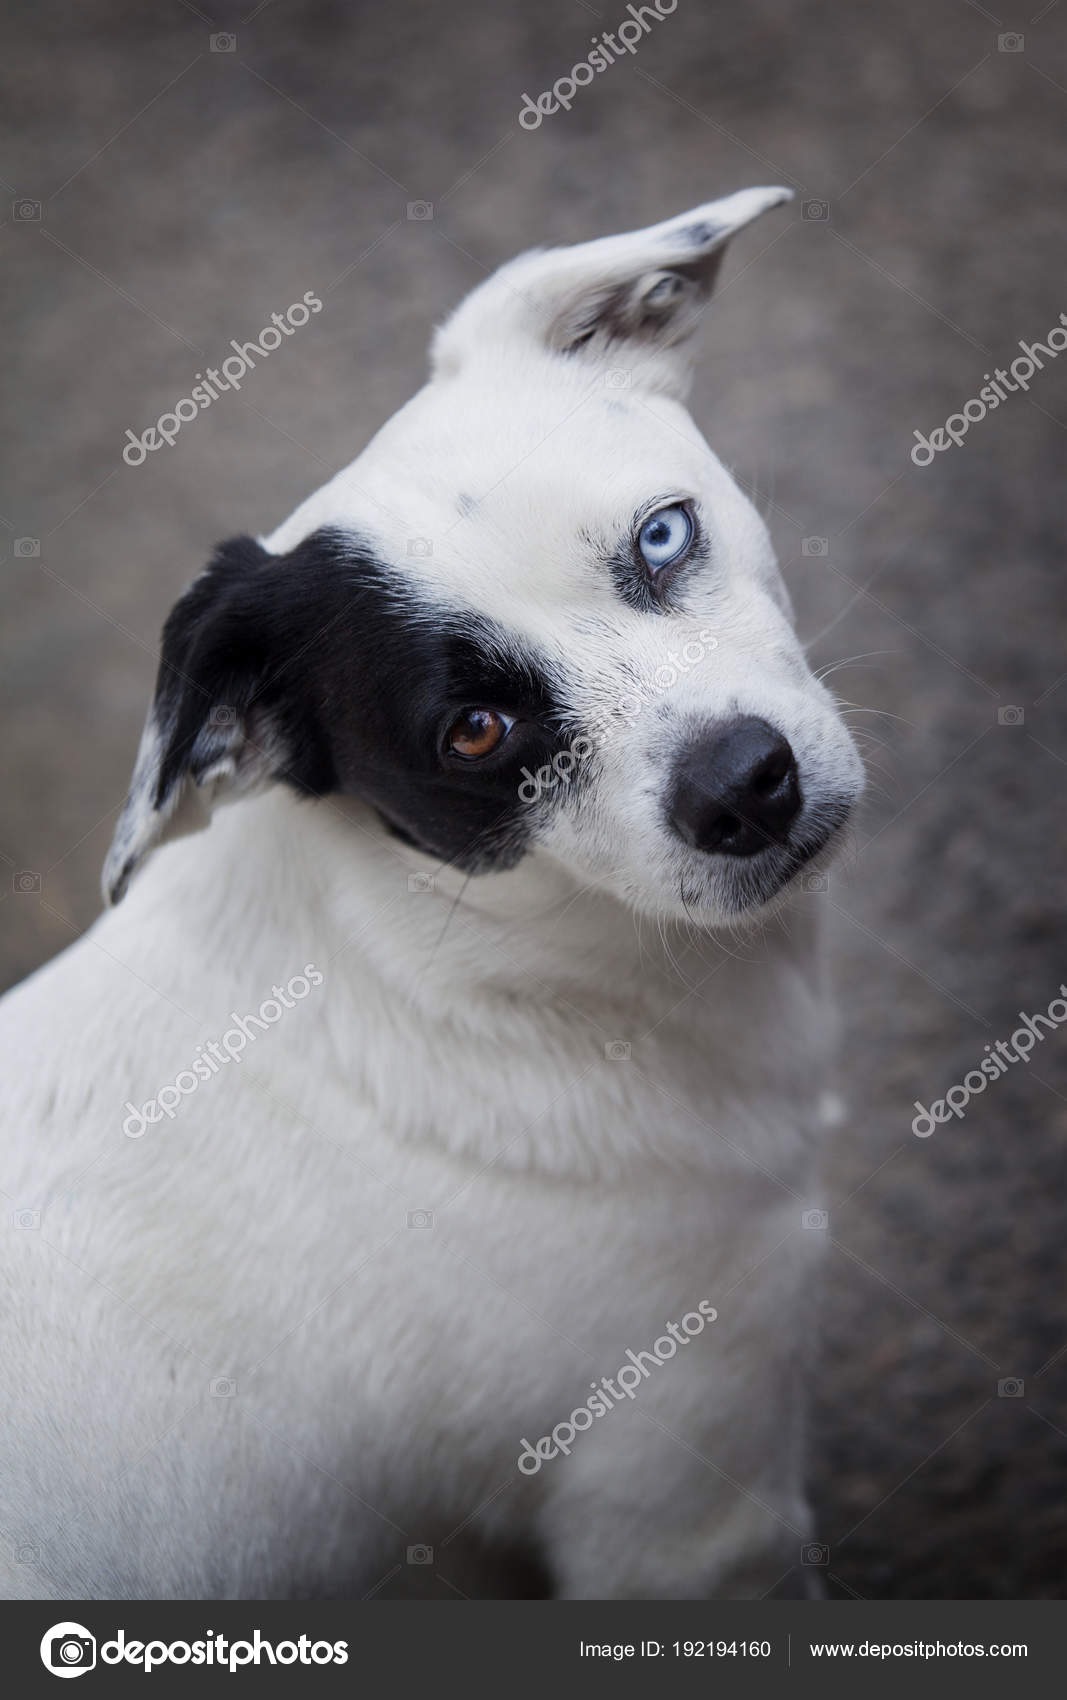 Um cão branco com uma mancha preta em um olho em um parque, pastor